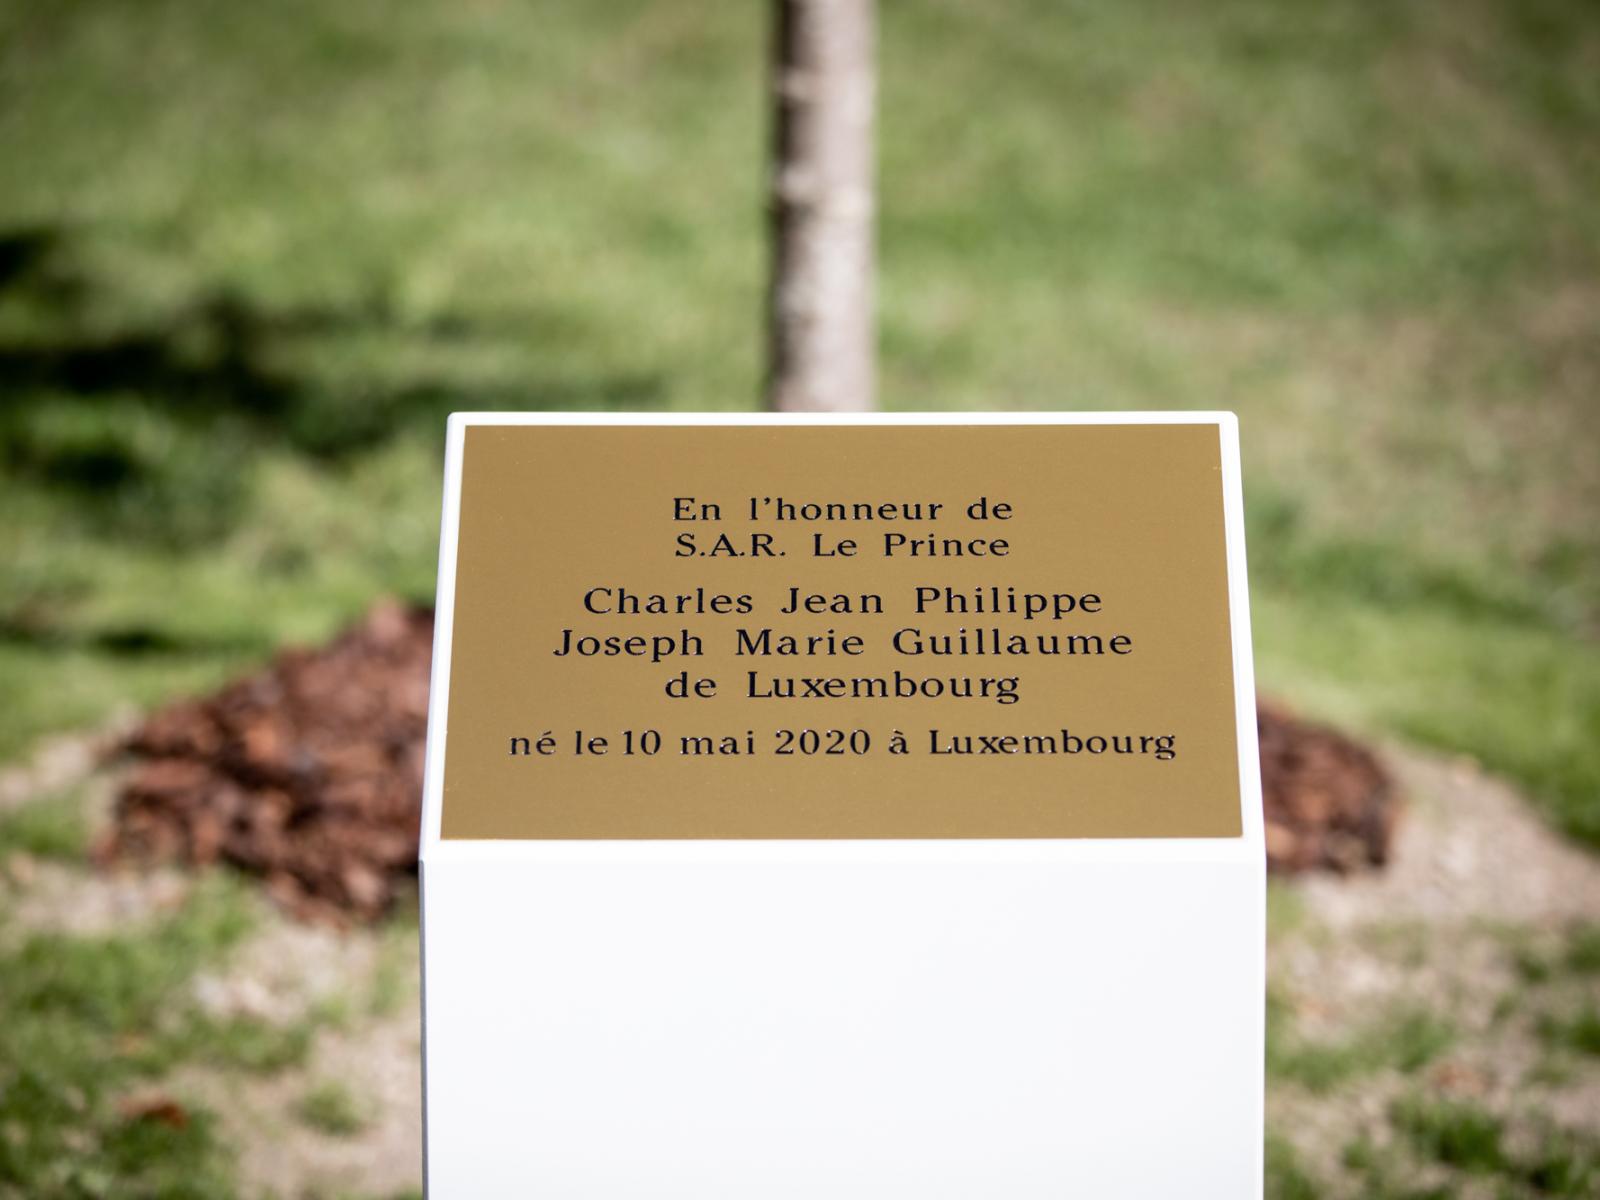 L'arbre planté en l'honneur du Prince Charles